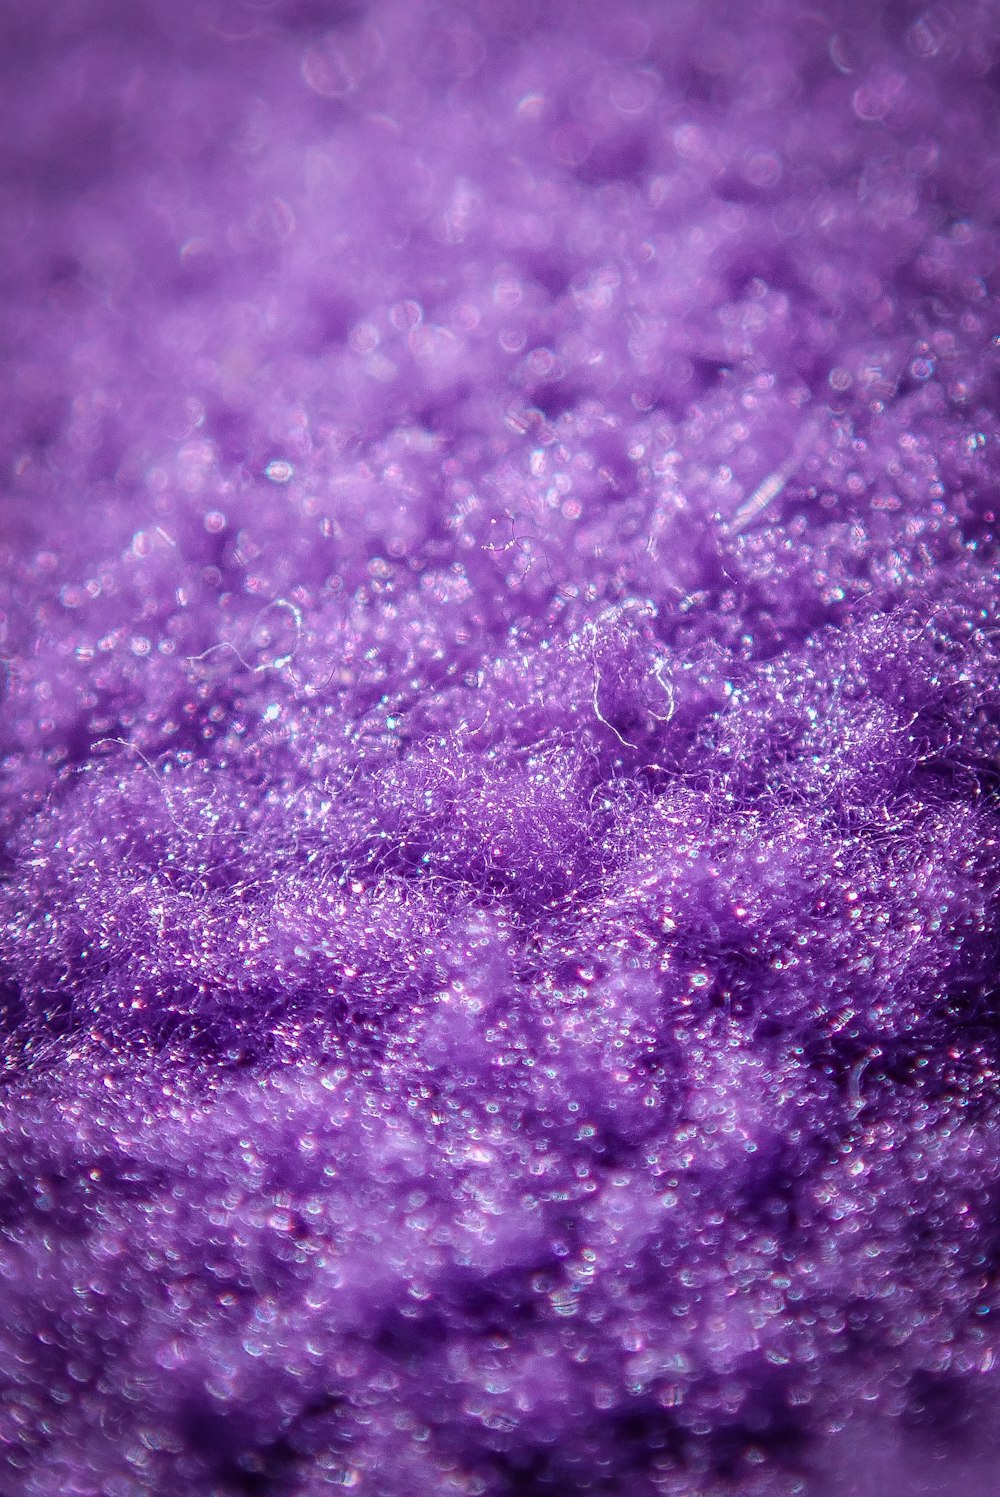 Eine Nahaufnahme einer violetten Substanz